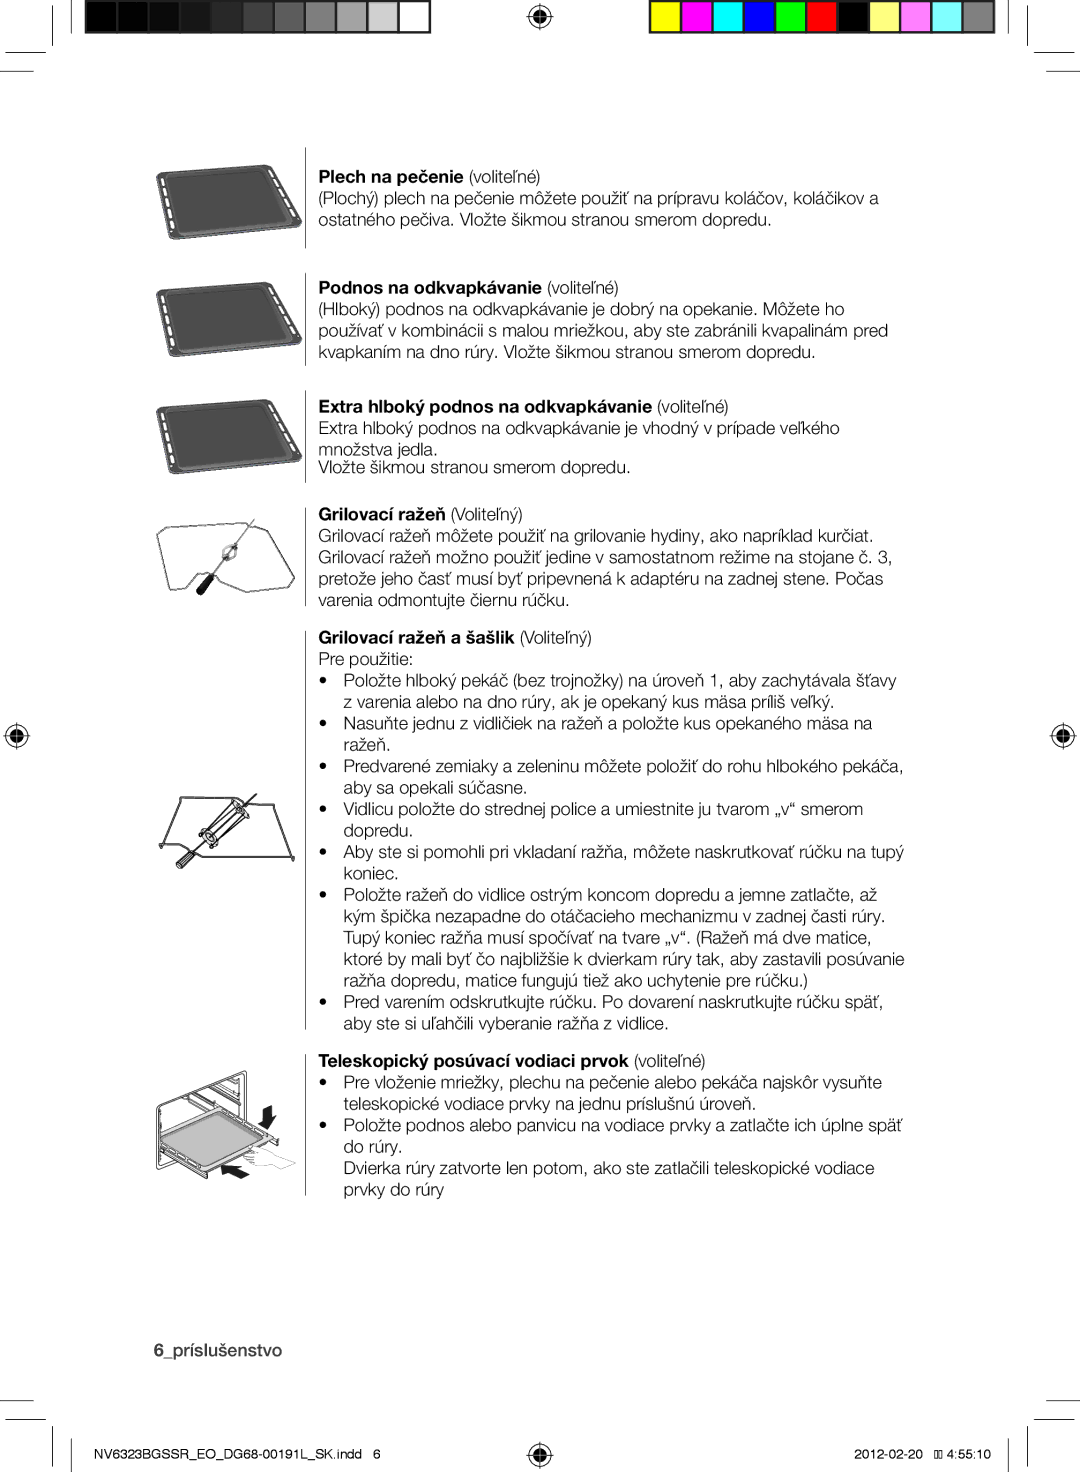 Samsung NV6353BGSSR/EO manual Plech na pečenie voliteľné, Podnos na odkvapkávanie voliteľné, Grilovací ražeň Voliteľný 